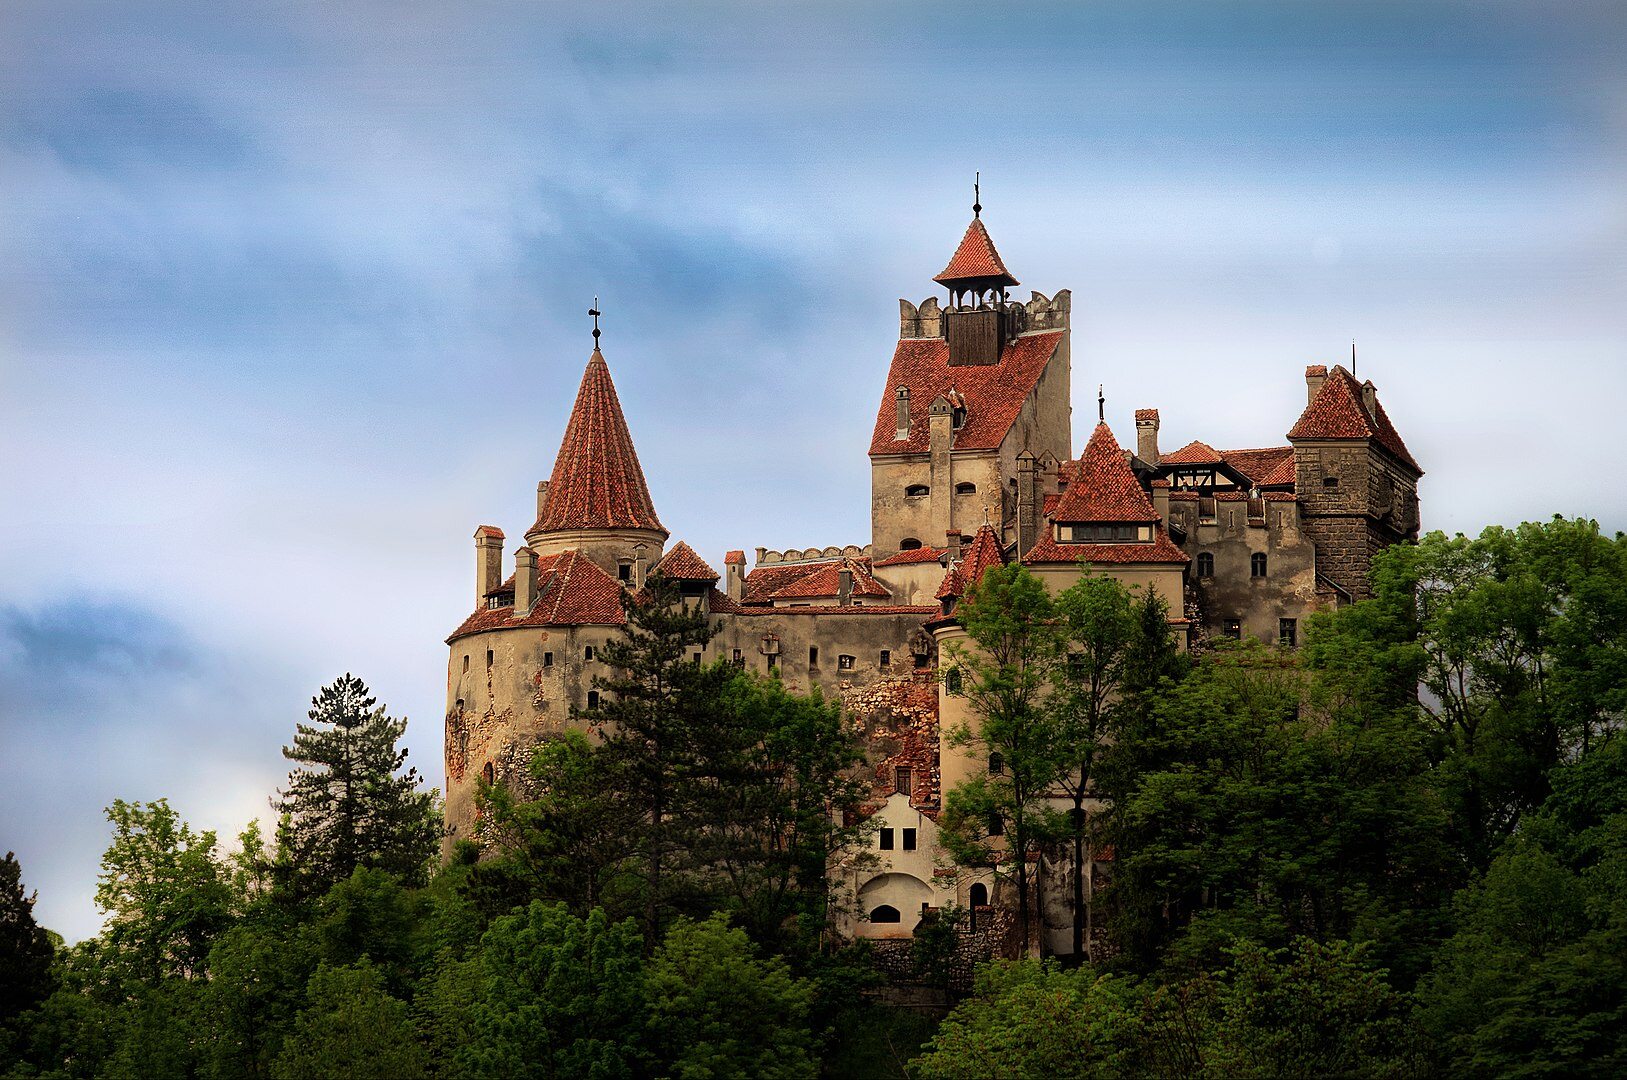 Podobno w zamku Bran mieszkał kiedyś Dracula. Gdzie znajduje się zamek?